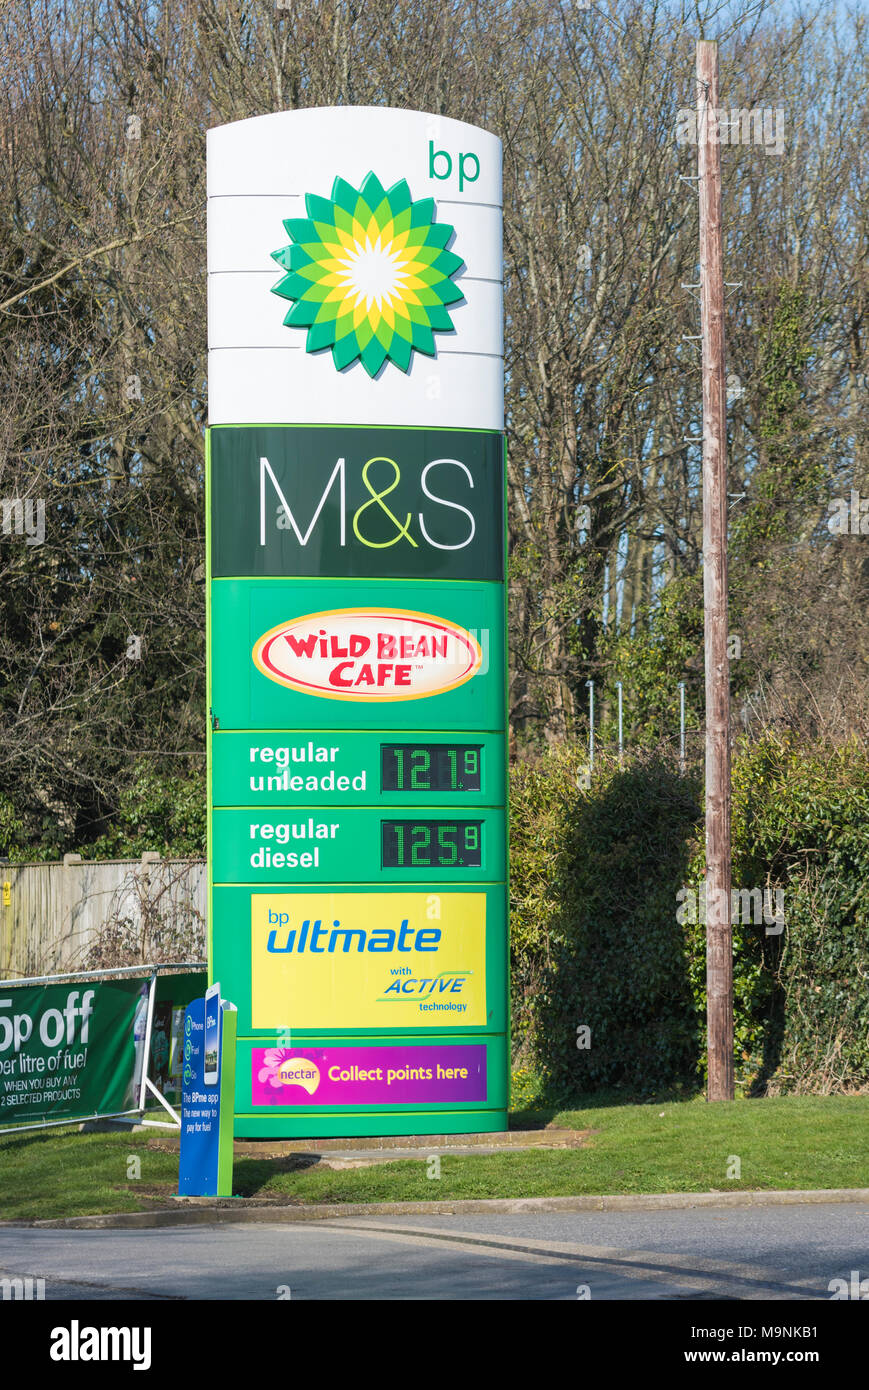 BP station de carburant pour l'achat d'essence et diesel avec boutiques sur place au Royaume-Uni. Station service BP. Banque D'Images